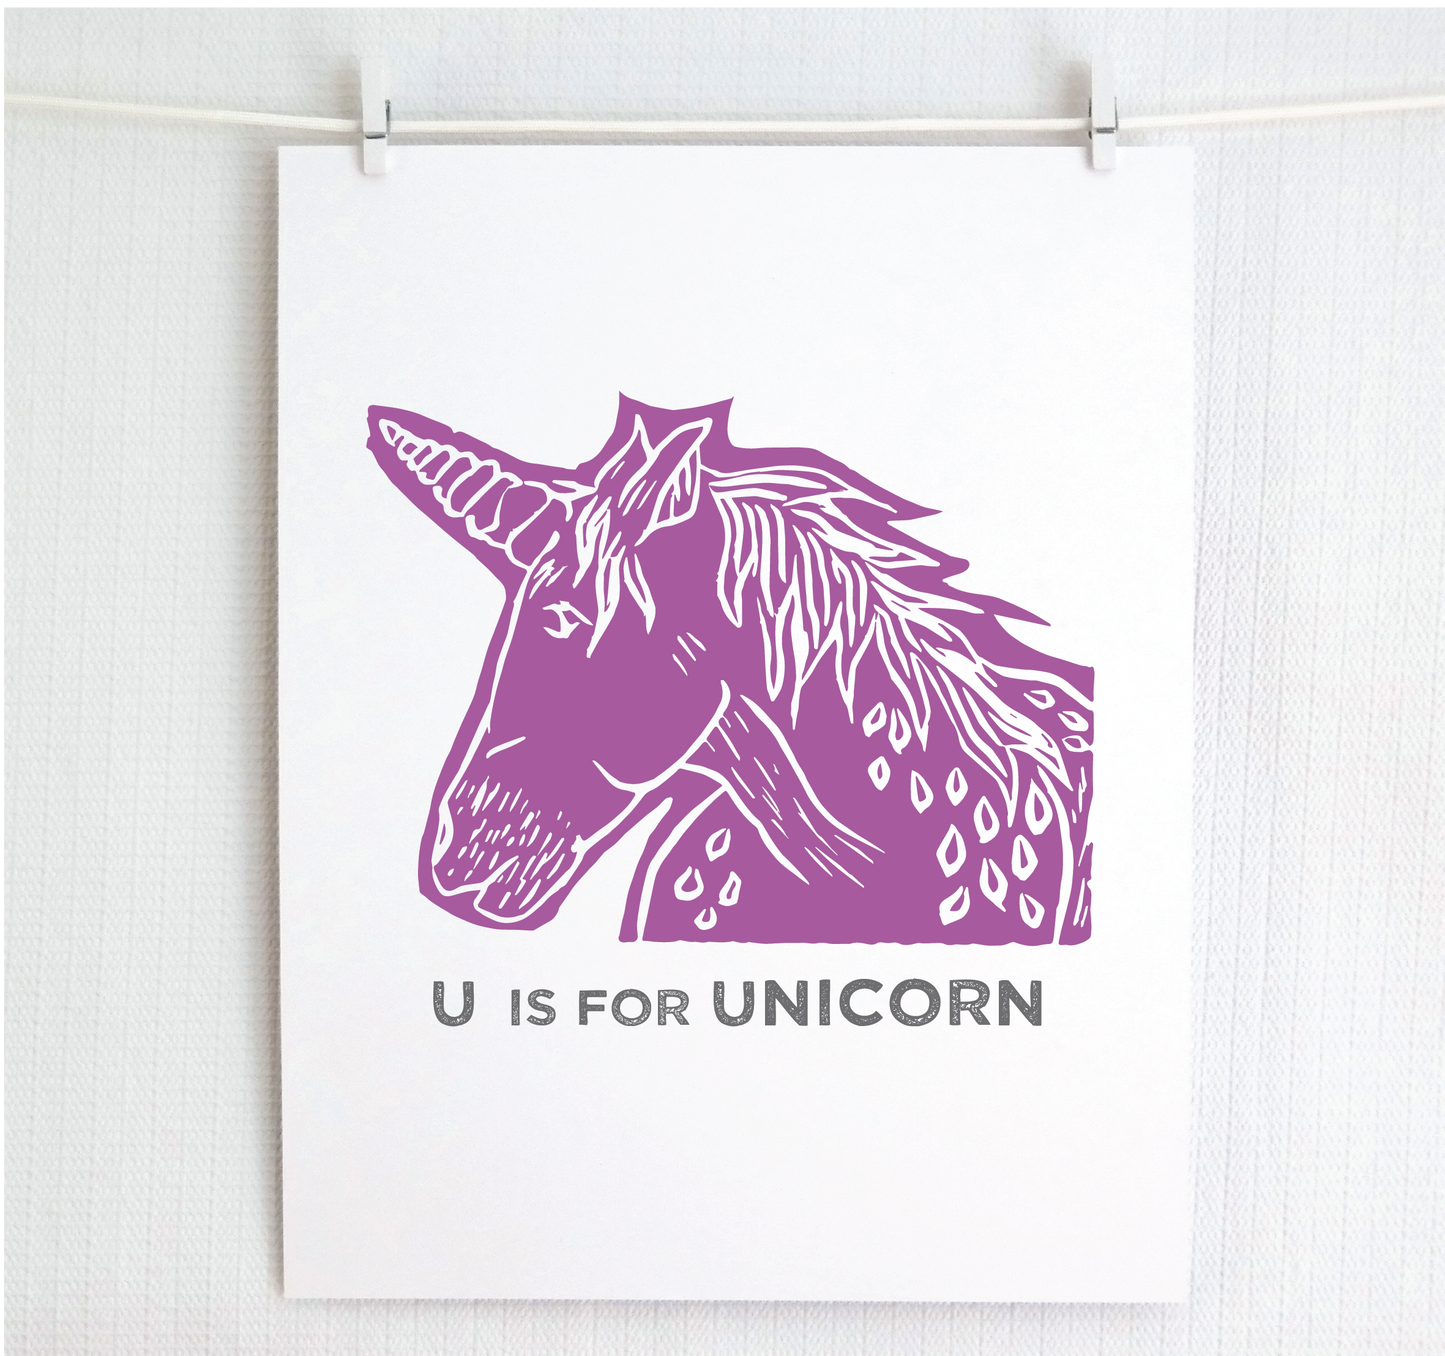 U is for Unicorn